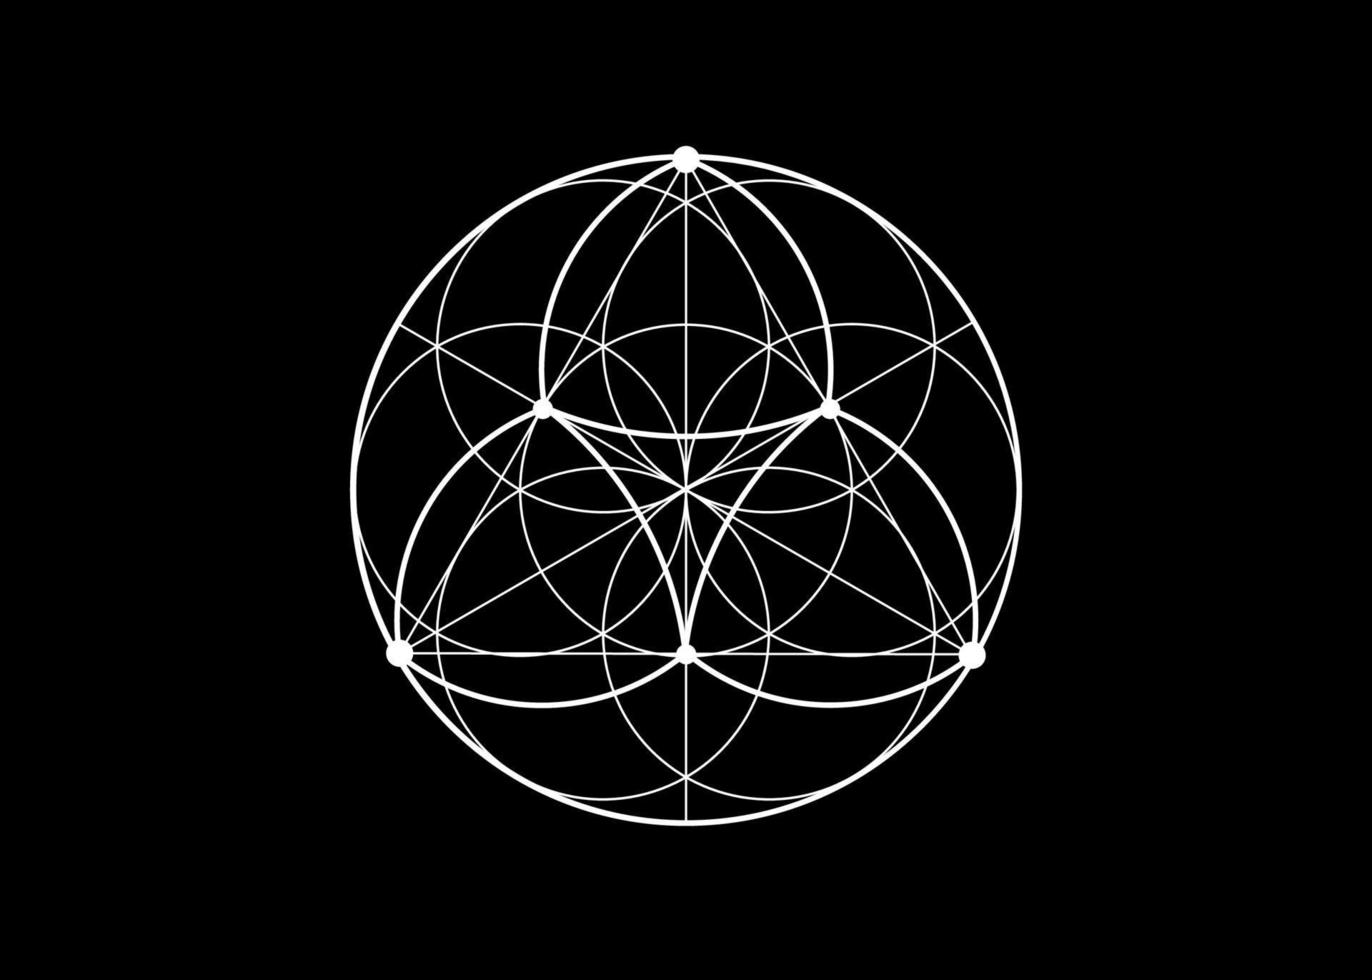 semente flor do ícone de lótus da vida, geometria sagrada da mandala yantra, símbolo de tatuagem de harmonia e equilíbrio. talismã místico, vetor de linhas brancas isolado em fundo preto